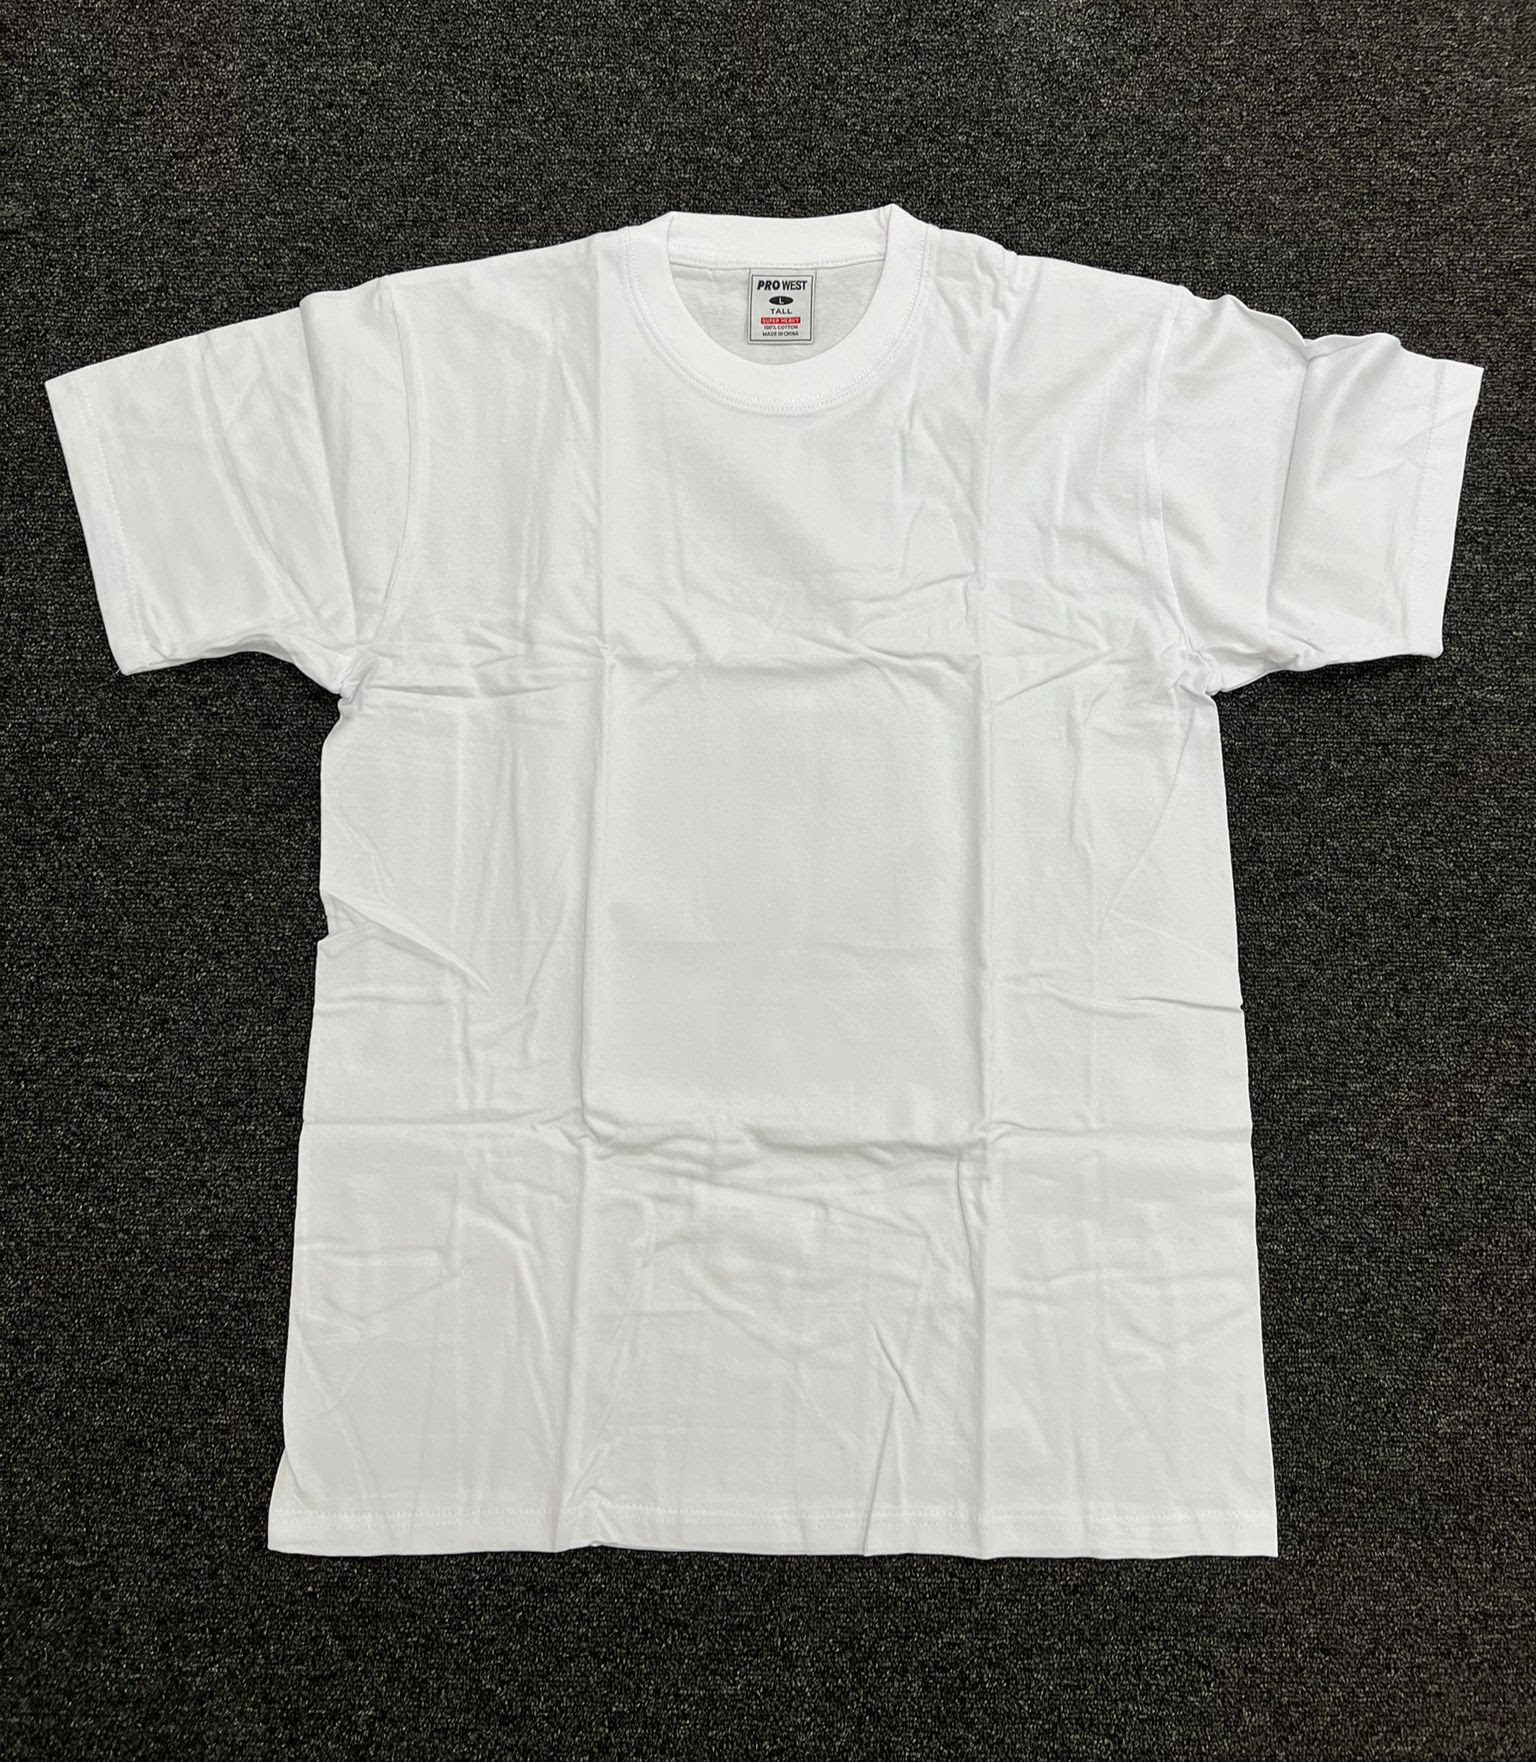 Pro West Mens 100% Cotton White T-Shirts. 29,880pcs.